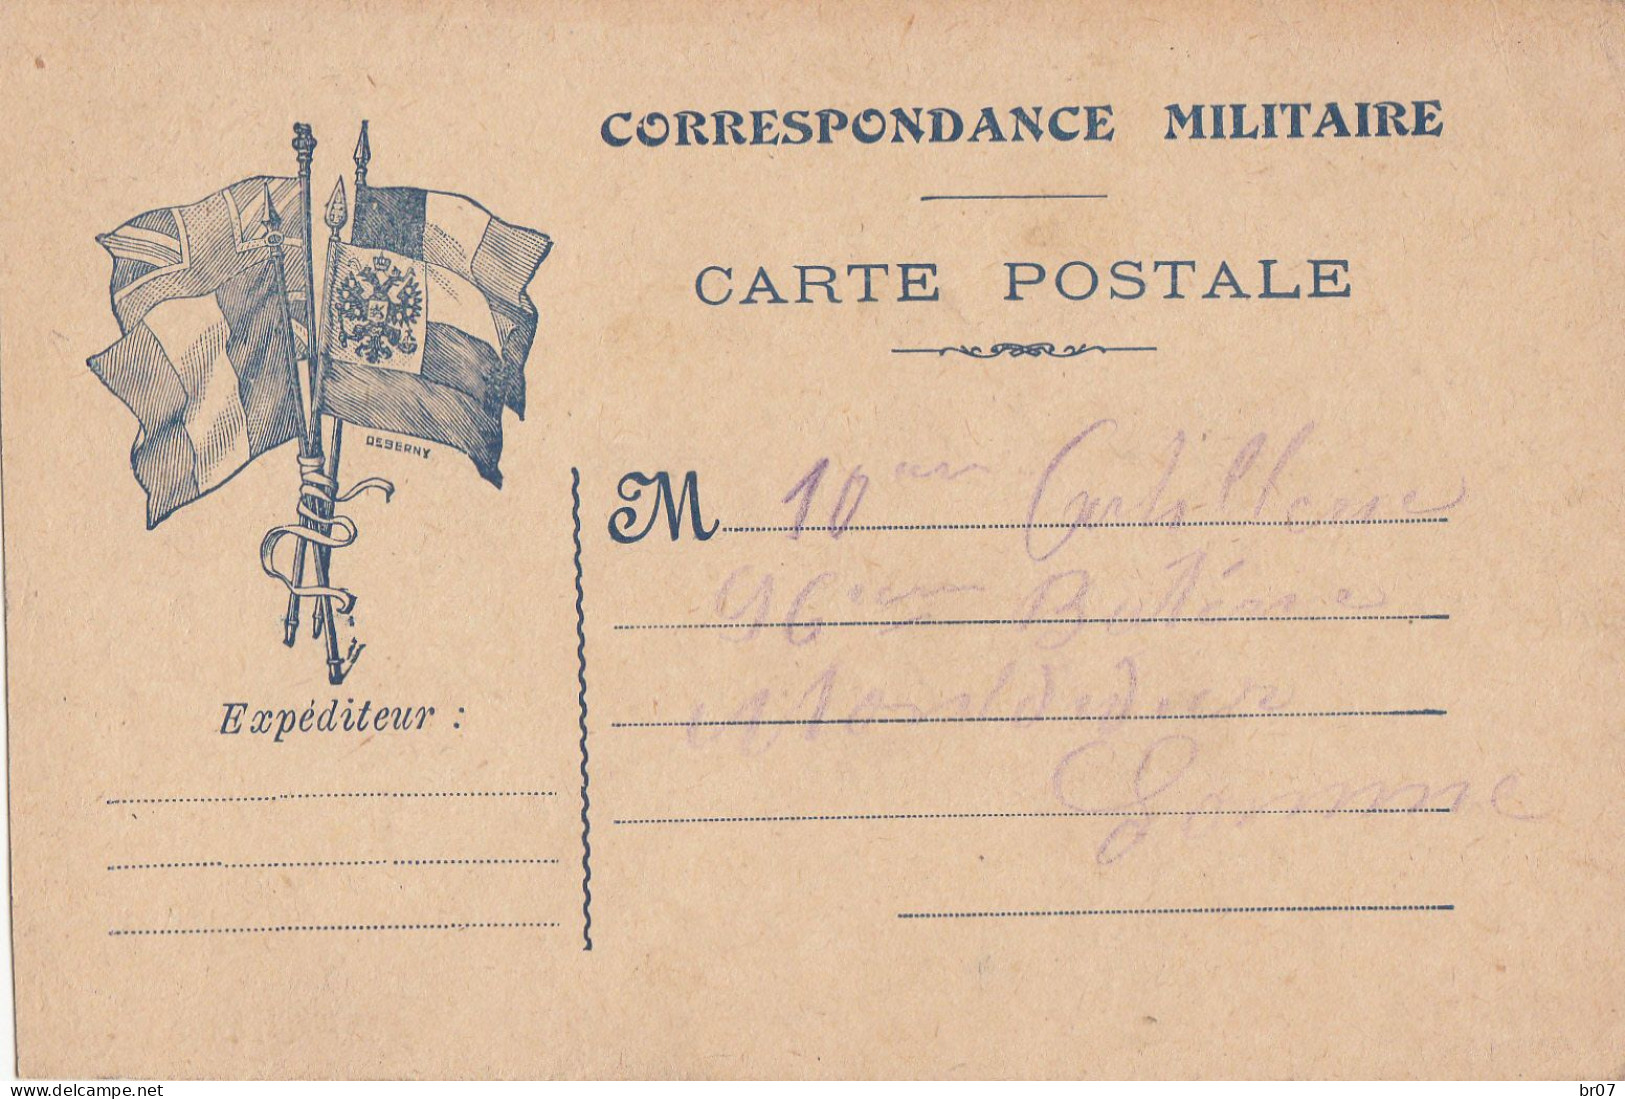 CPFM ILLUSTRATION DRAPEAUX SIGNE DEBERNY VERSO DATEE 1916 - WW I